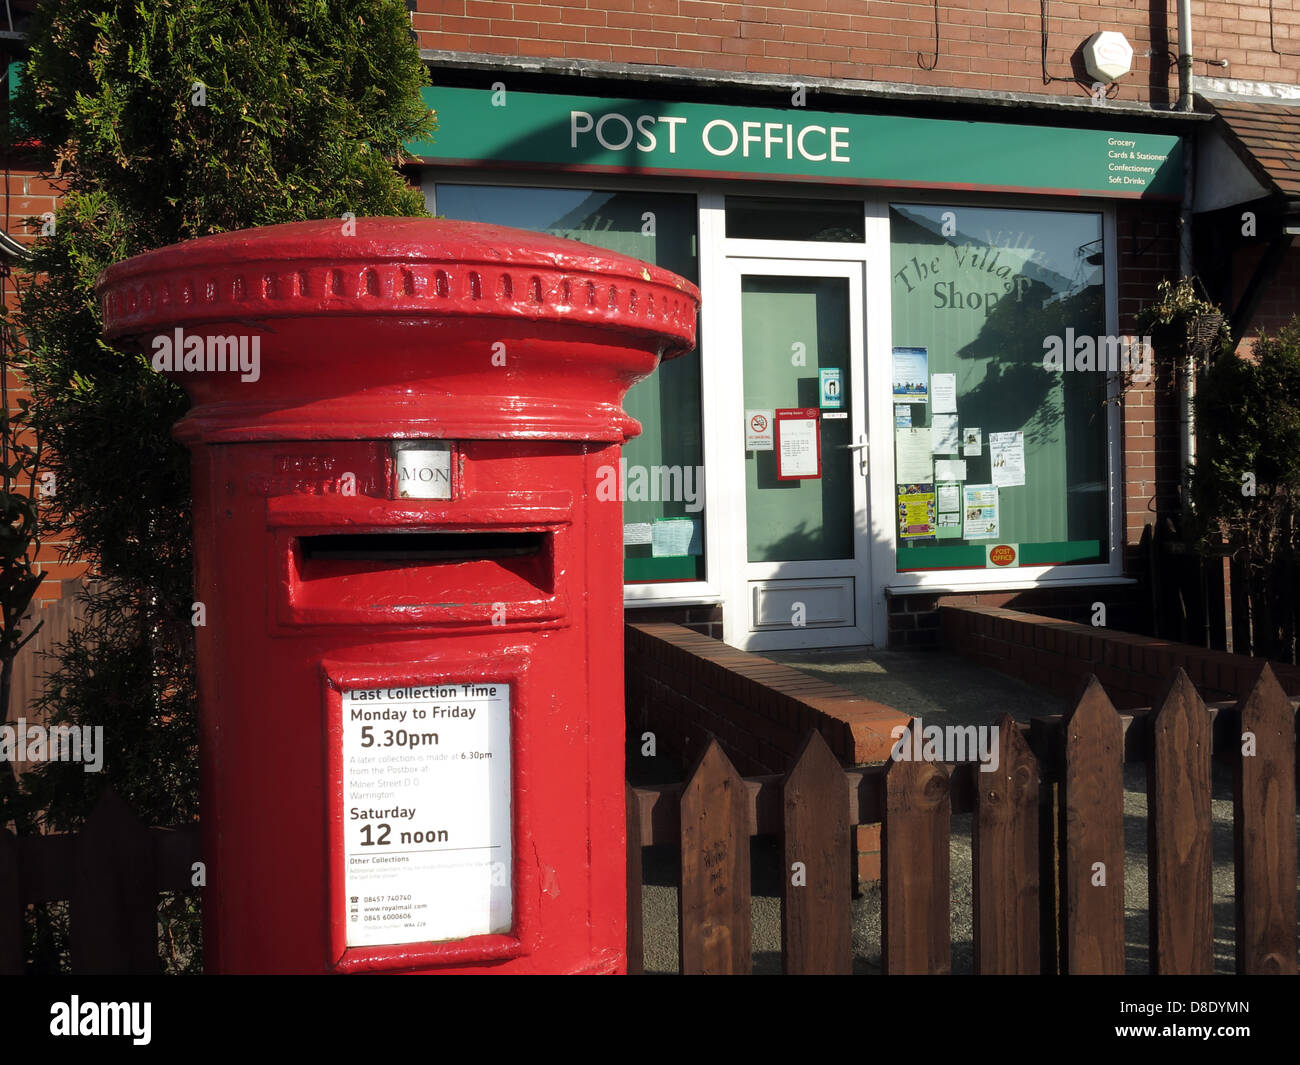 Boîte rouge et bureau de sous-poste du village, 18, avenue Lindi, Grappenhall Village, Warrington, Cheshire, Angleterre, Royaume-Uni WA4 2SJ Banque D'Images